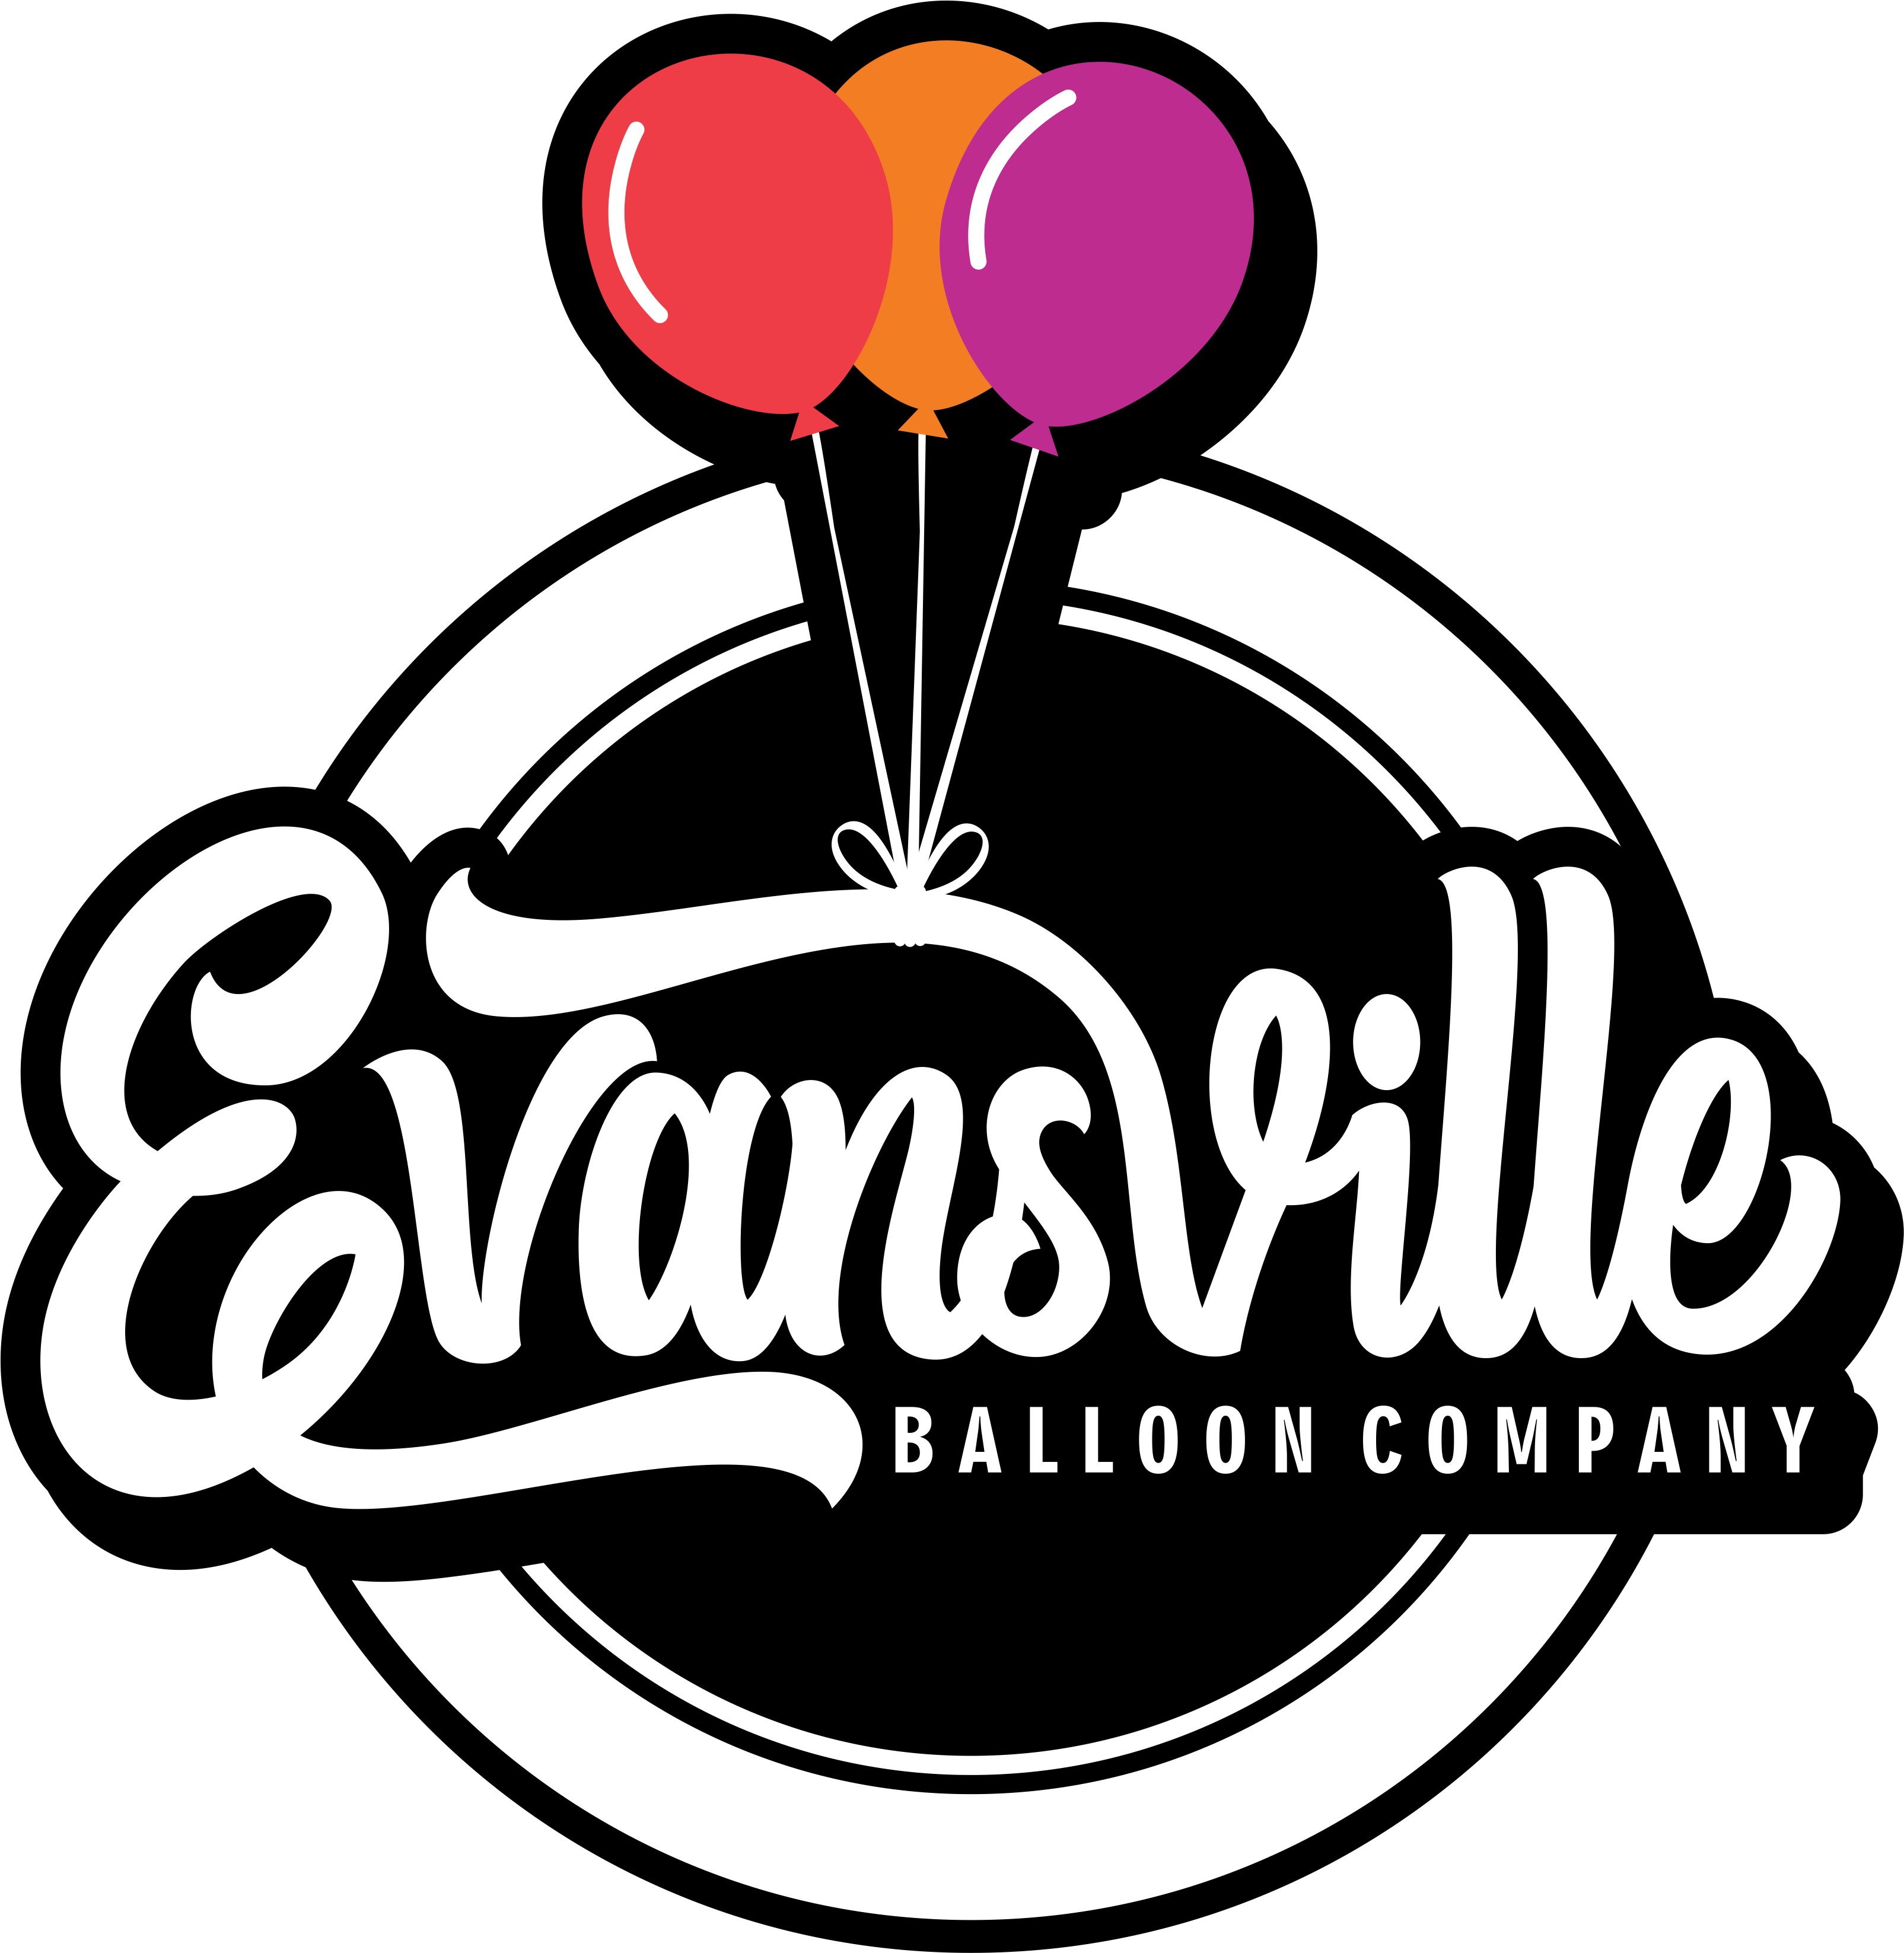 Evansville Balloon Company